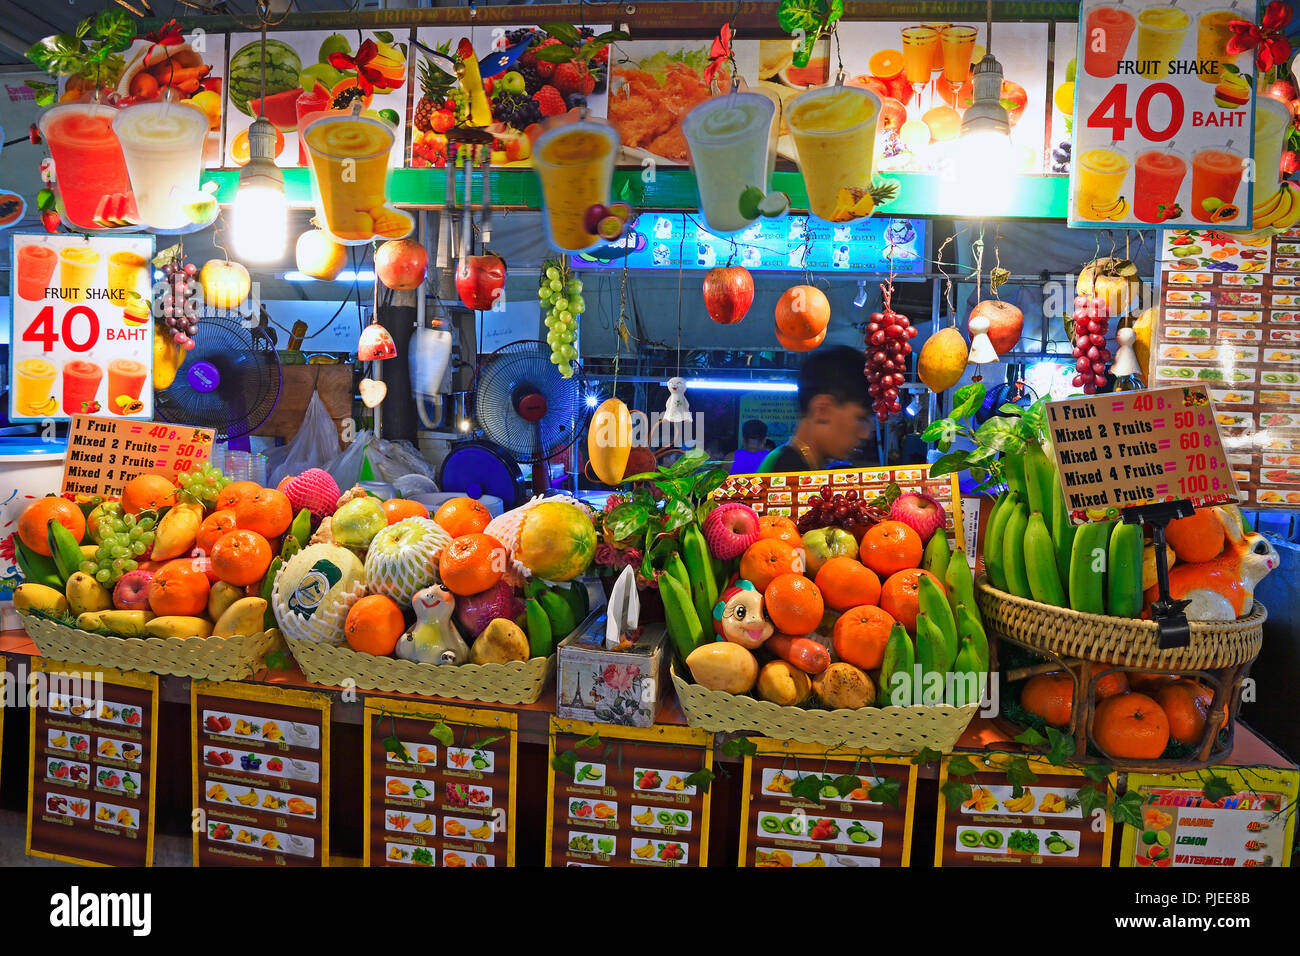 Stato per la produzione di frullati fruttato, il mercato notturno di Patong Beach, Phuket, Thailandia, Stand zur Herstellung von fruchtigen frullati, Nachtmark Foto Stock